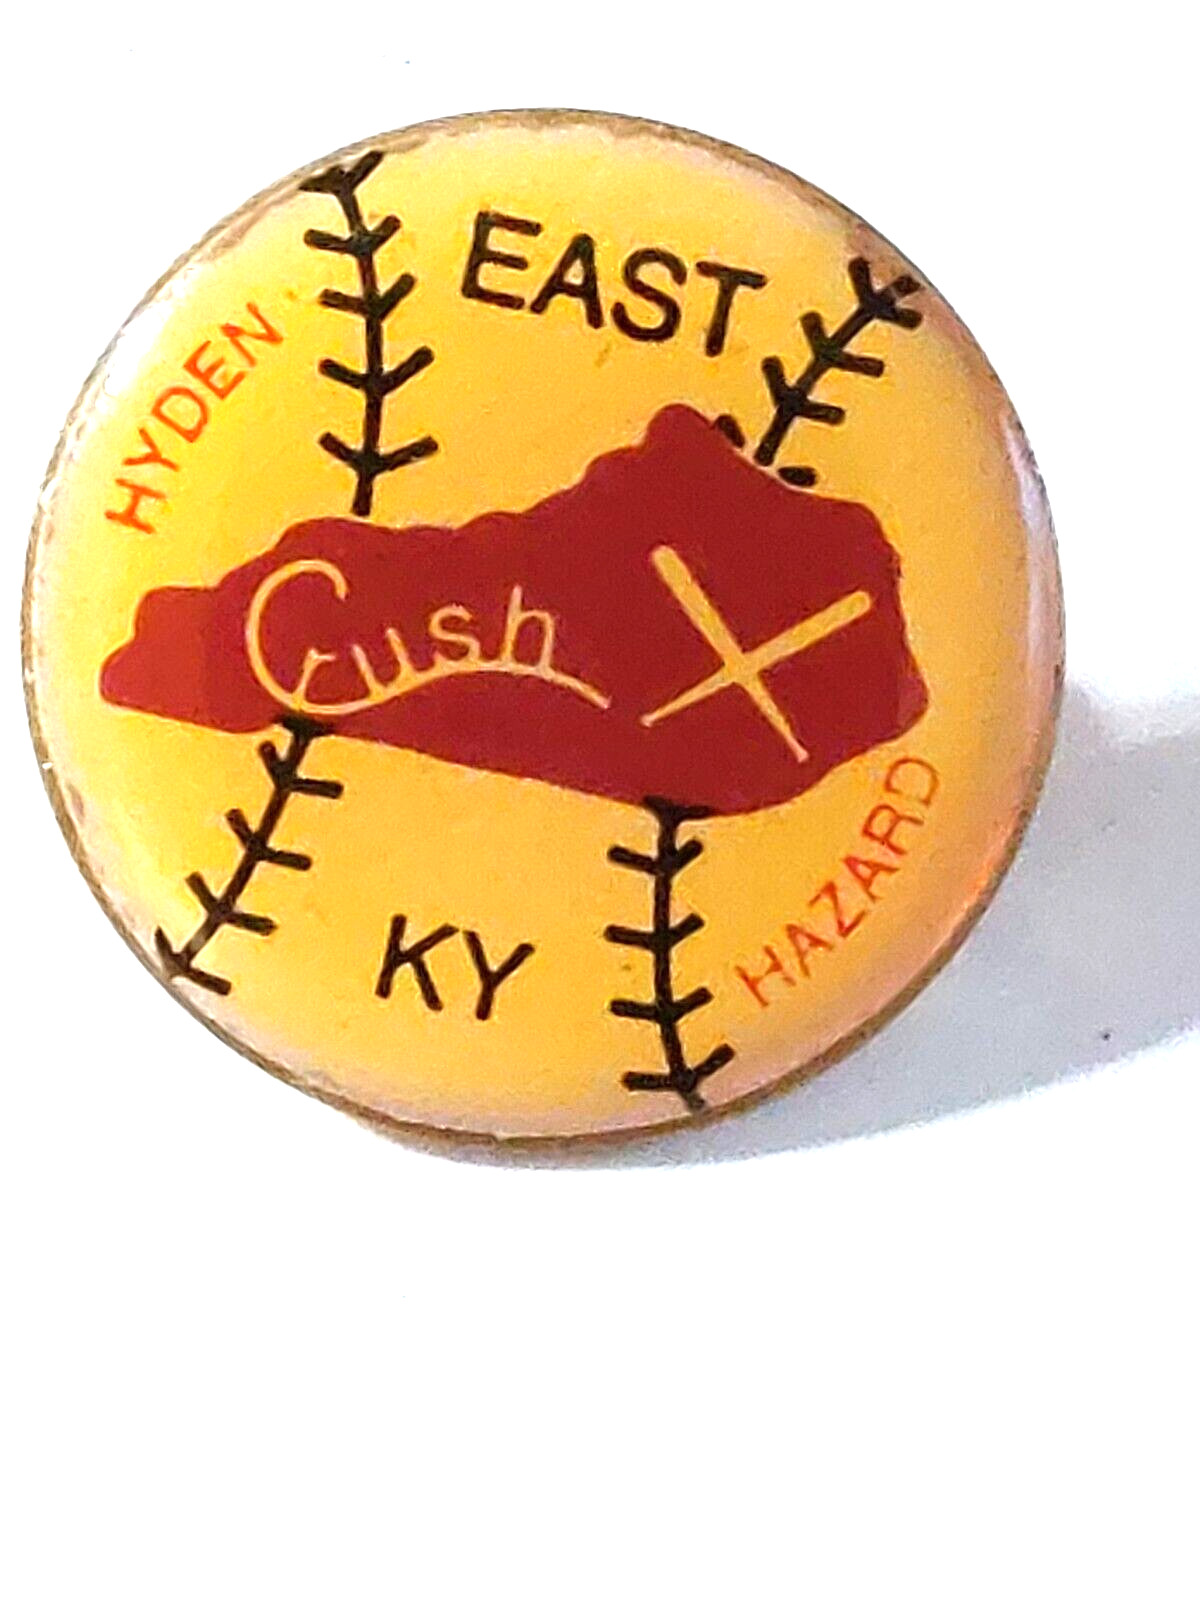 Girls Softball East Kentucky Crush Hyden vs. Hazard Lapel Pin